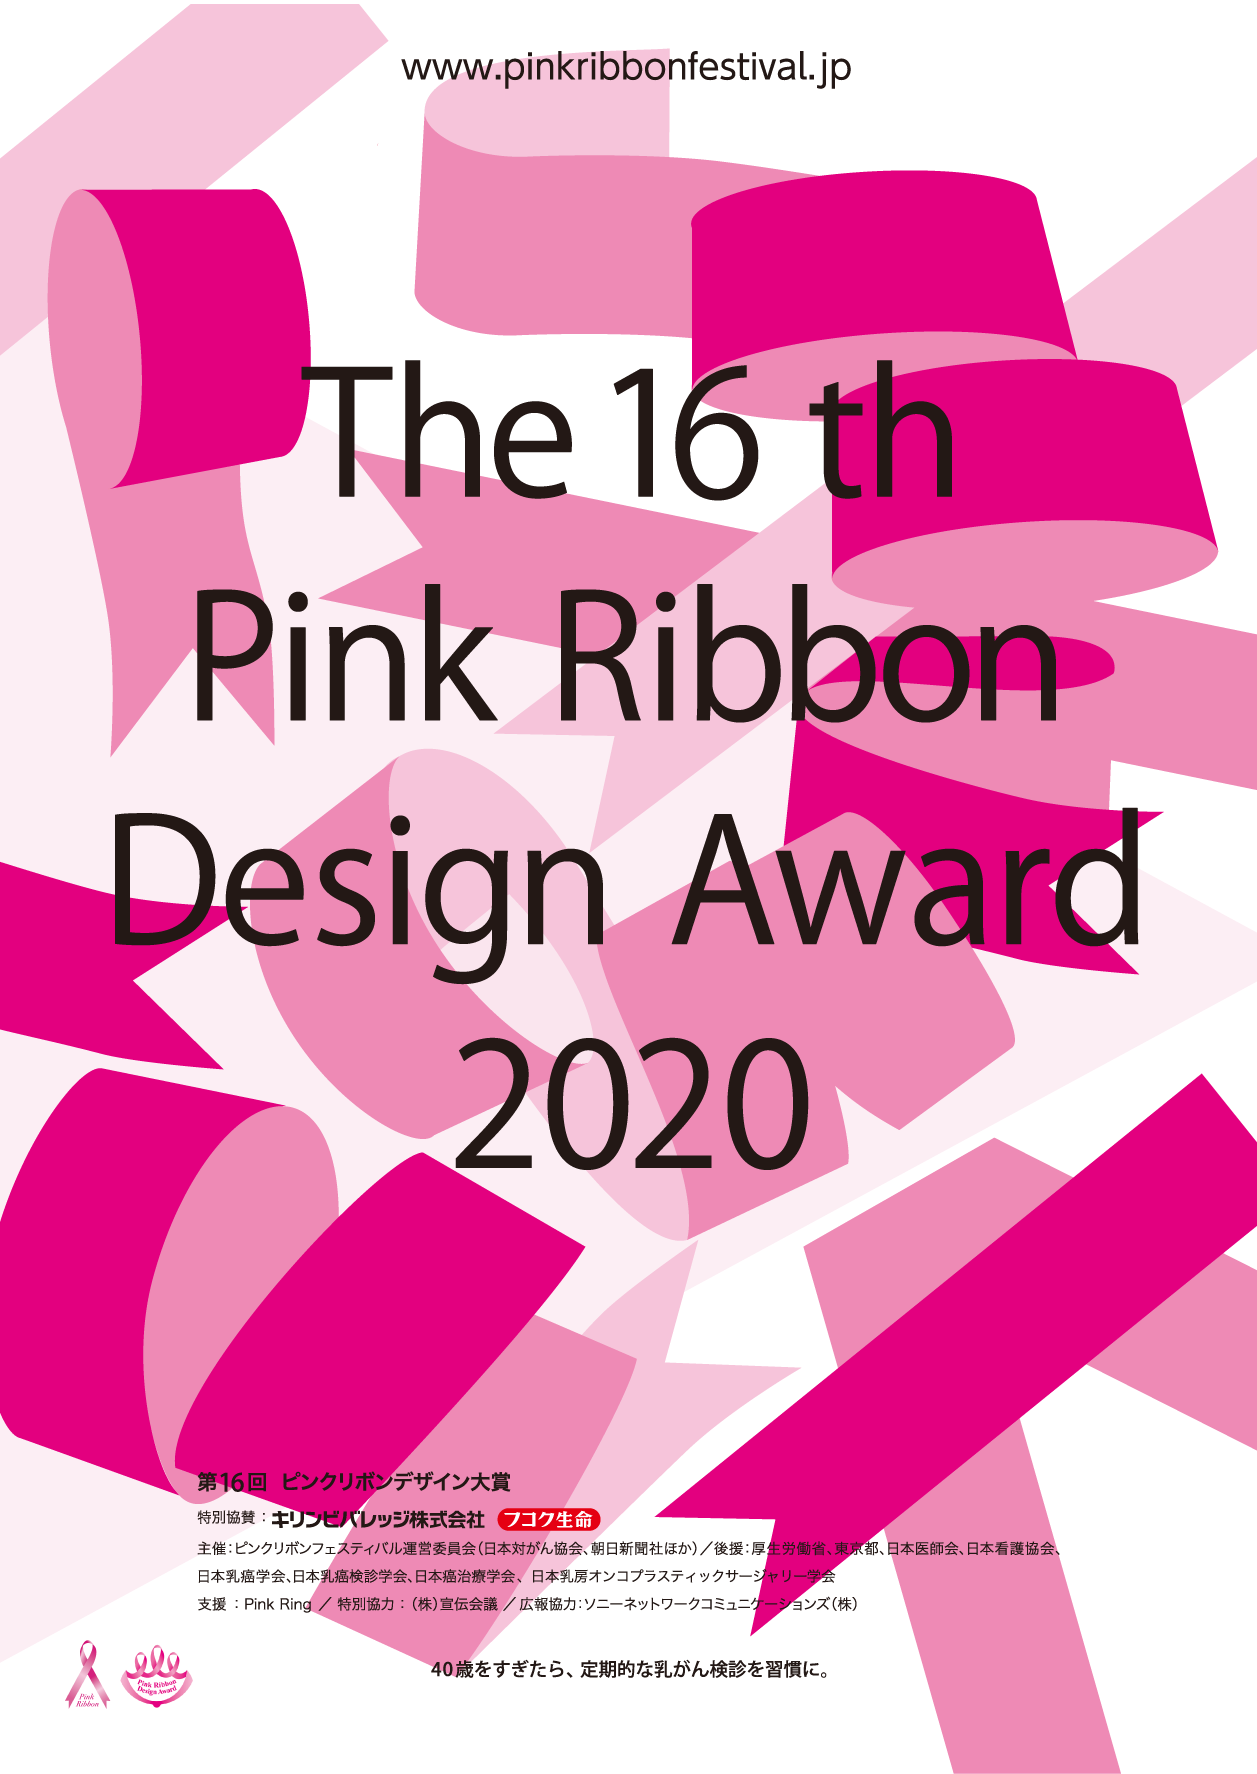 第16回ピンクリボンデザイン大賞の作品募集を開始いたします ピンクリボンフェスティバル公式サイト